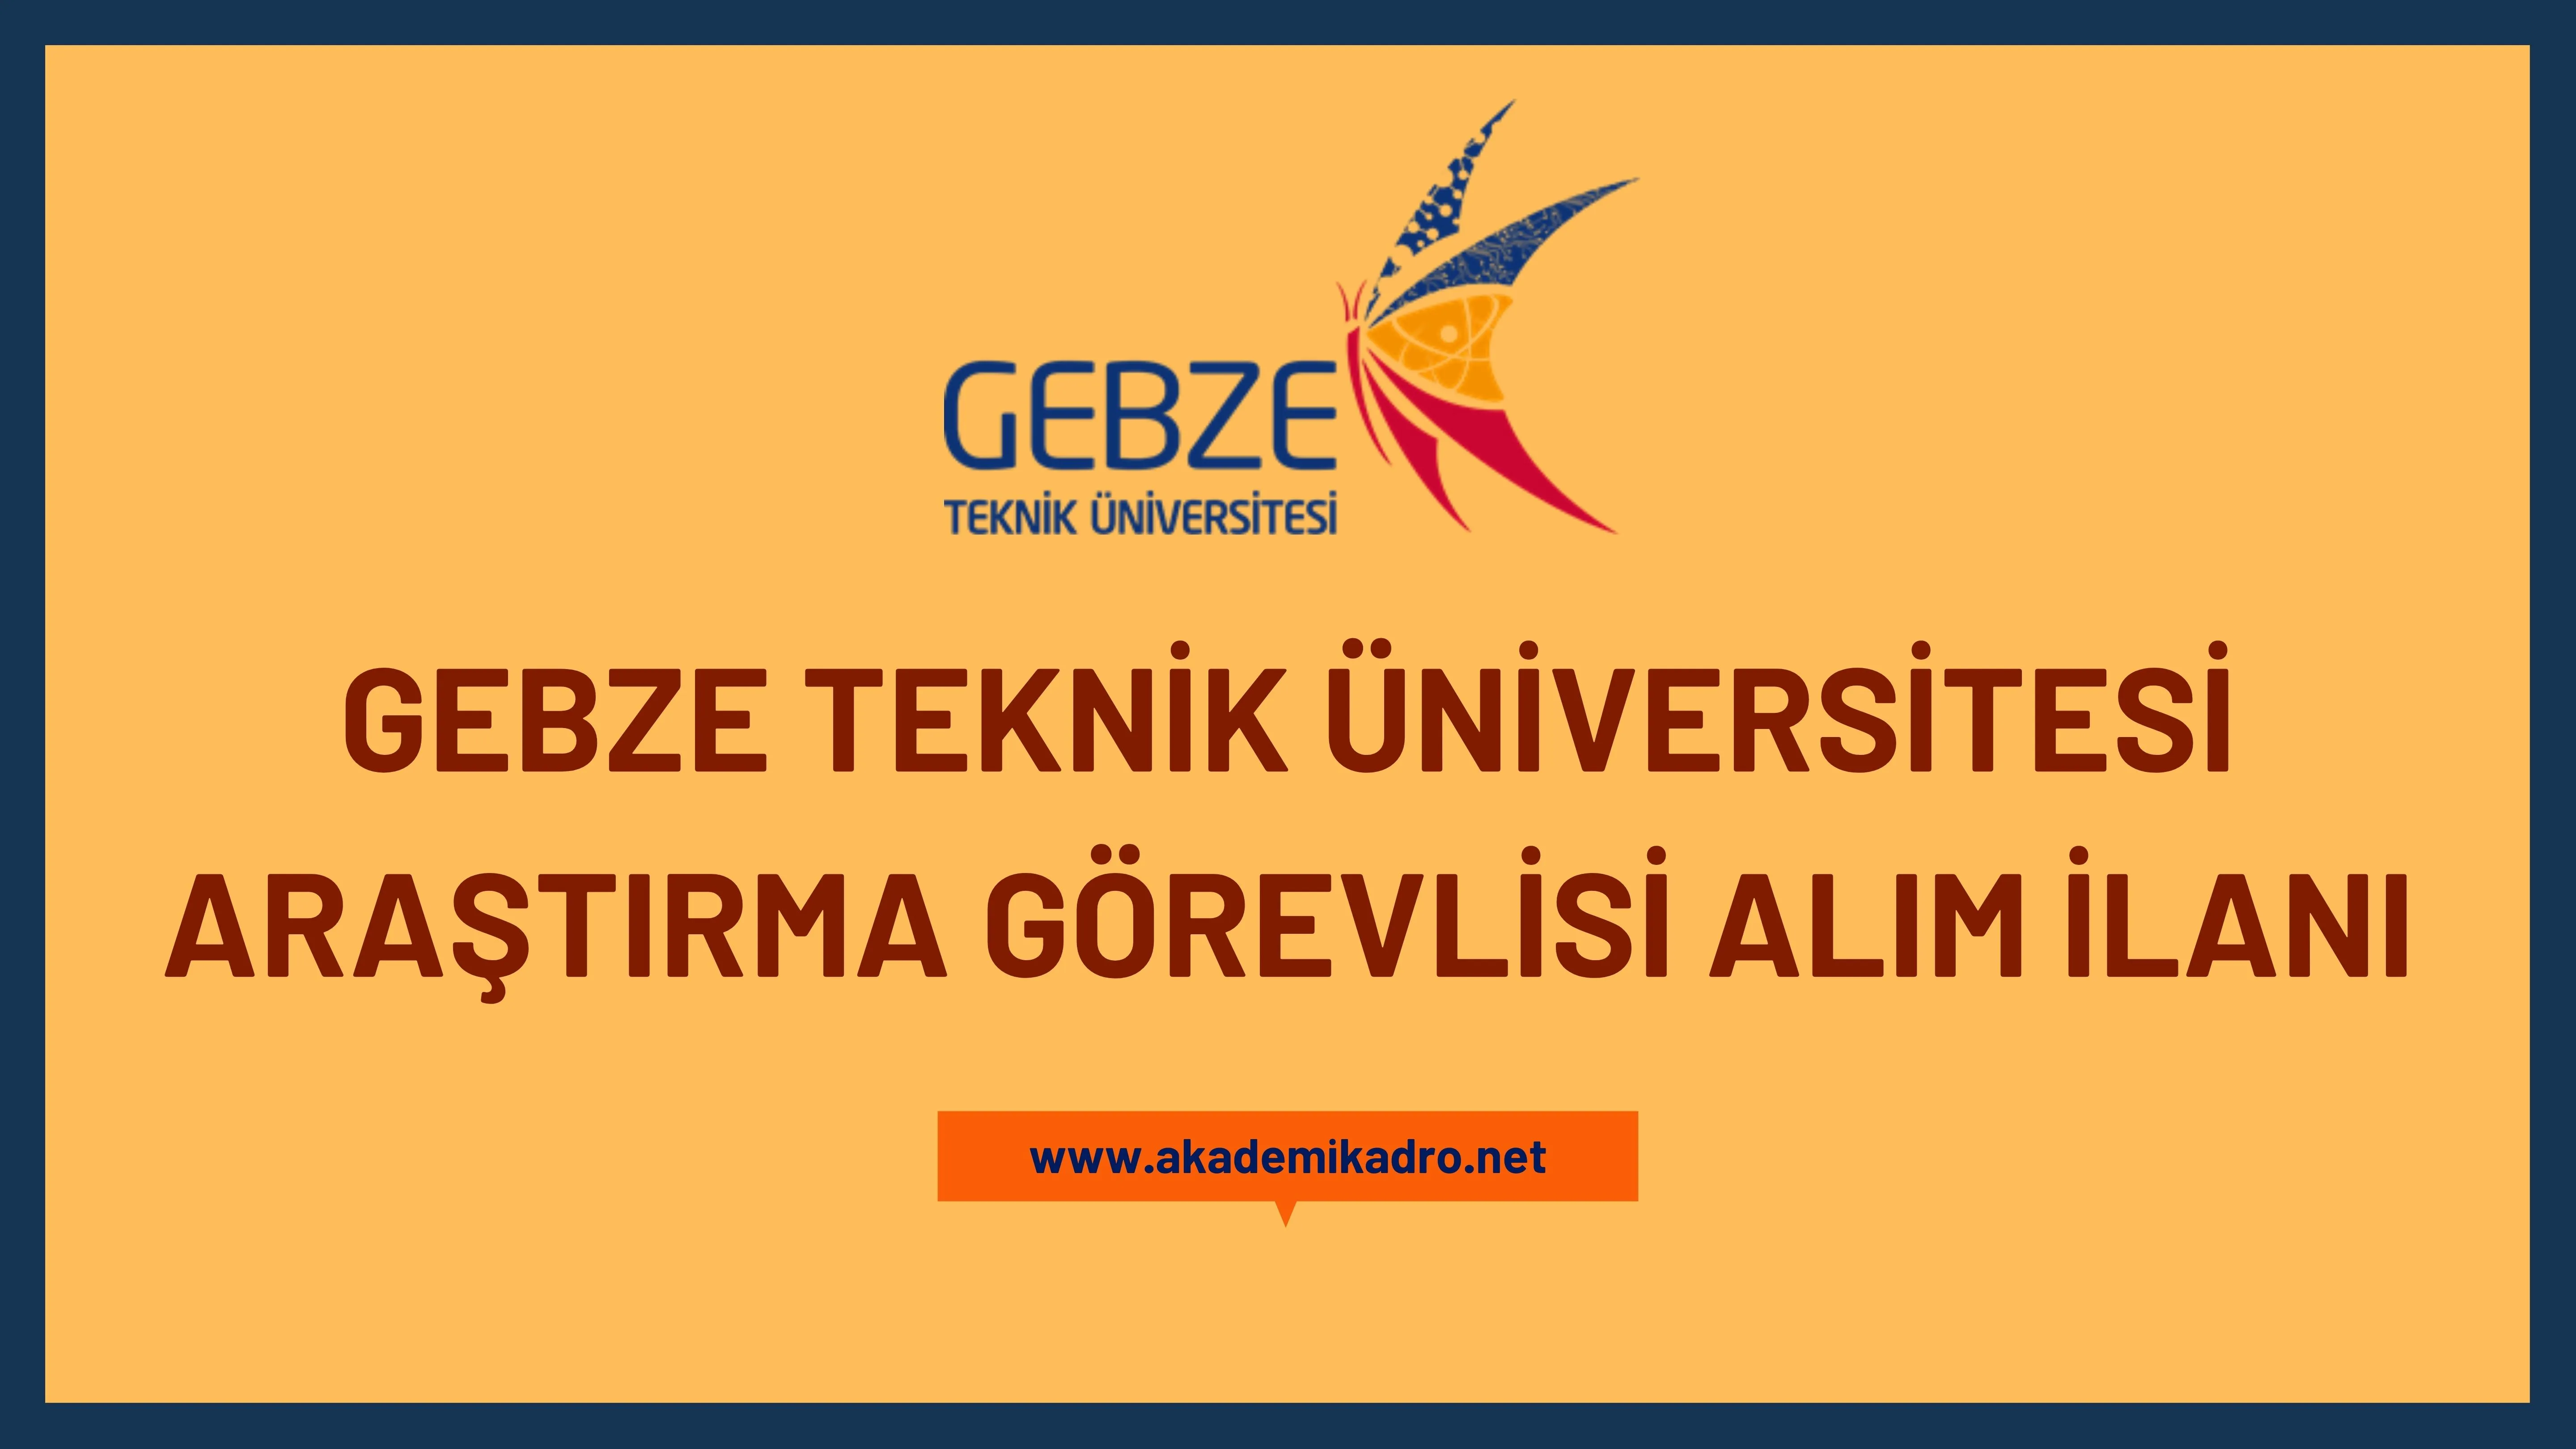 Gebze Teknik Üniversitesi birçok alandan 25 Araştırma görevlisi alacak.